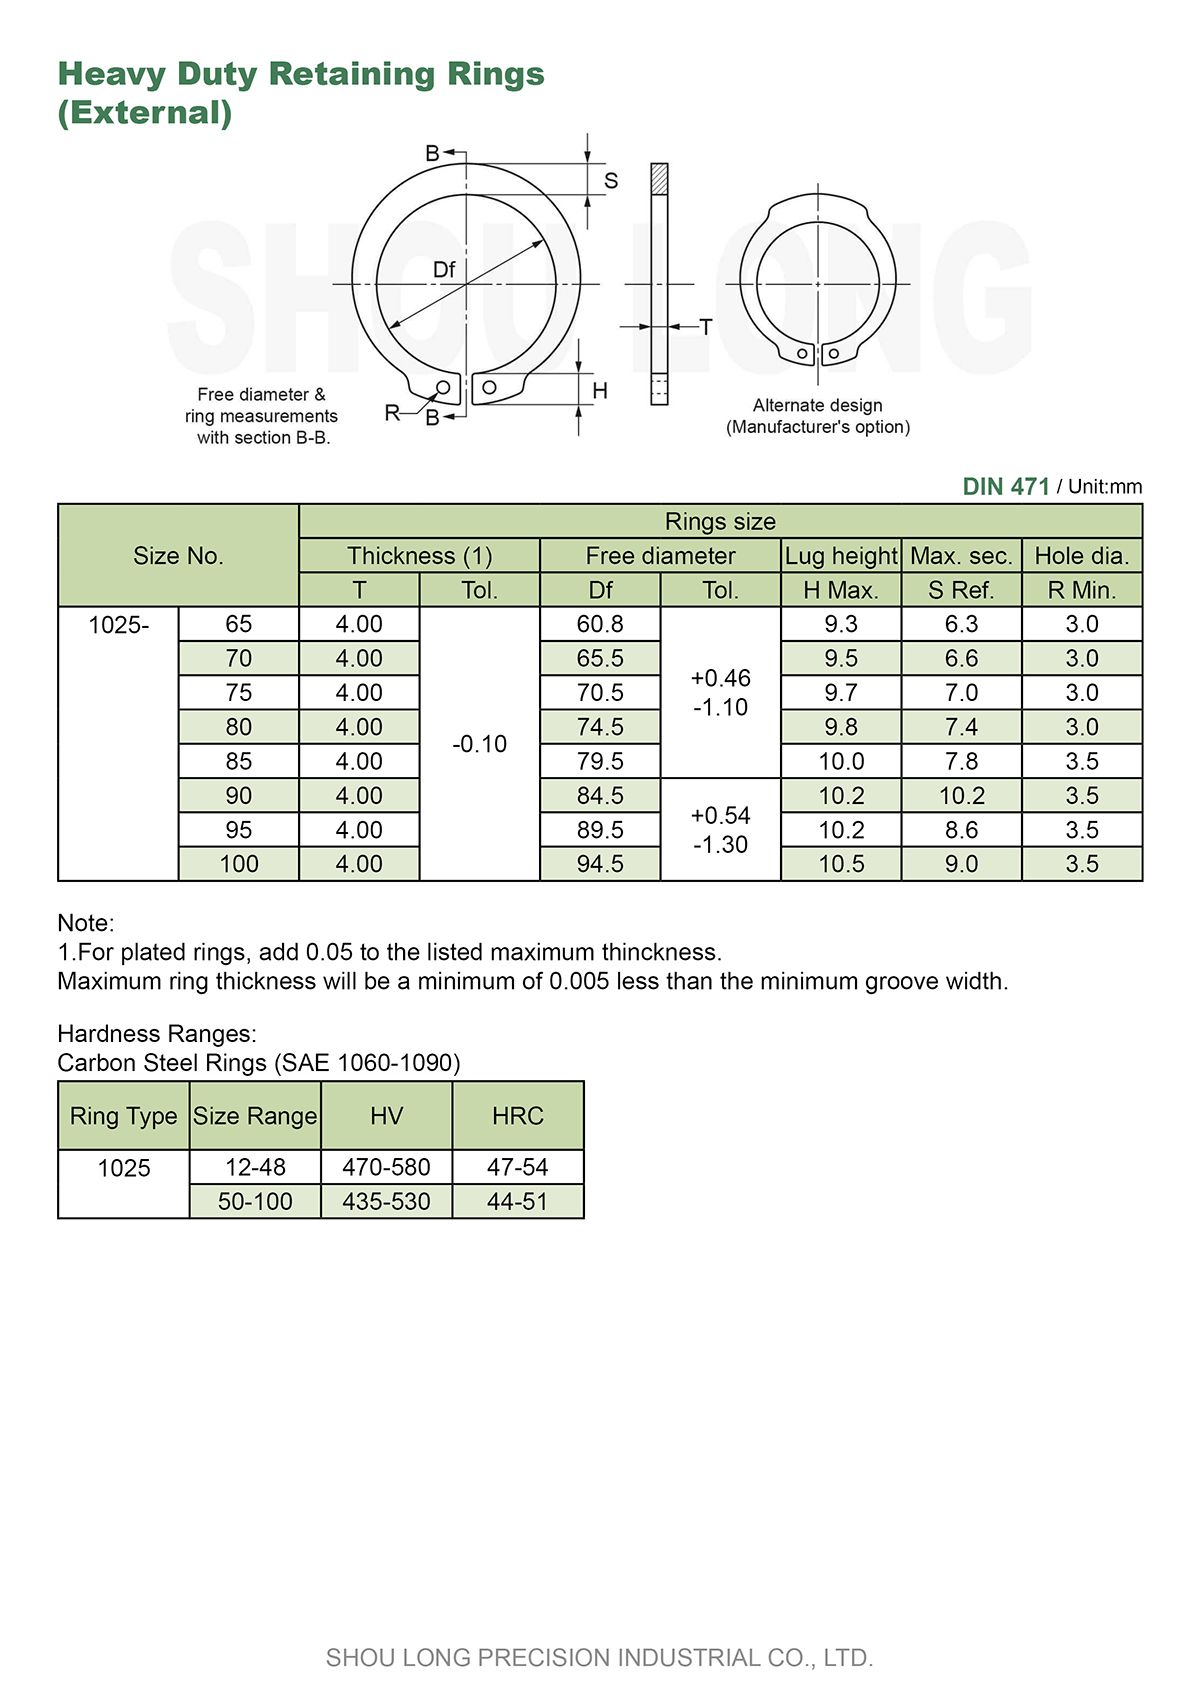 Especificação de Anéis de Retenção de Serviço Pesado Métricos para Eixo DIN471 - 2